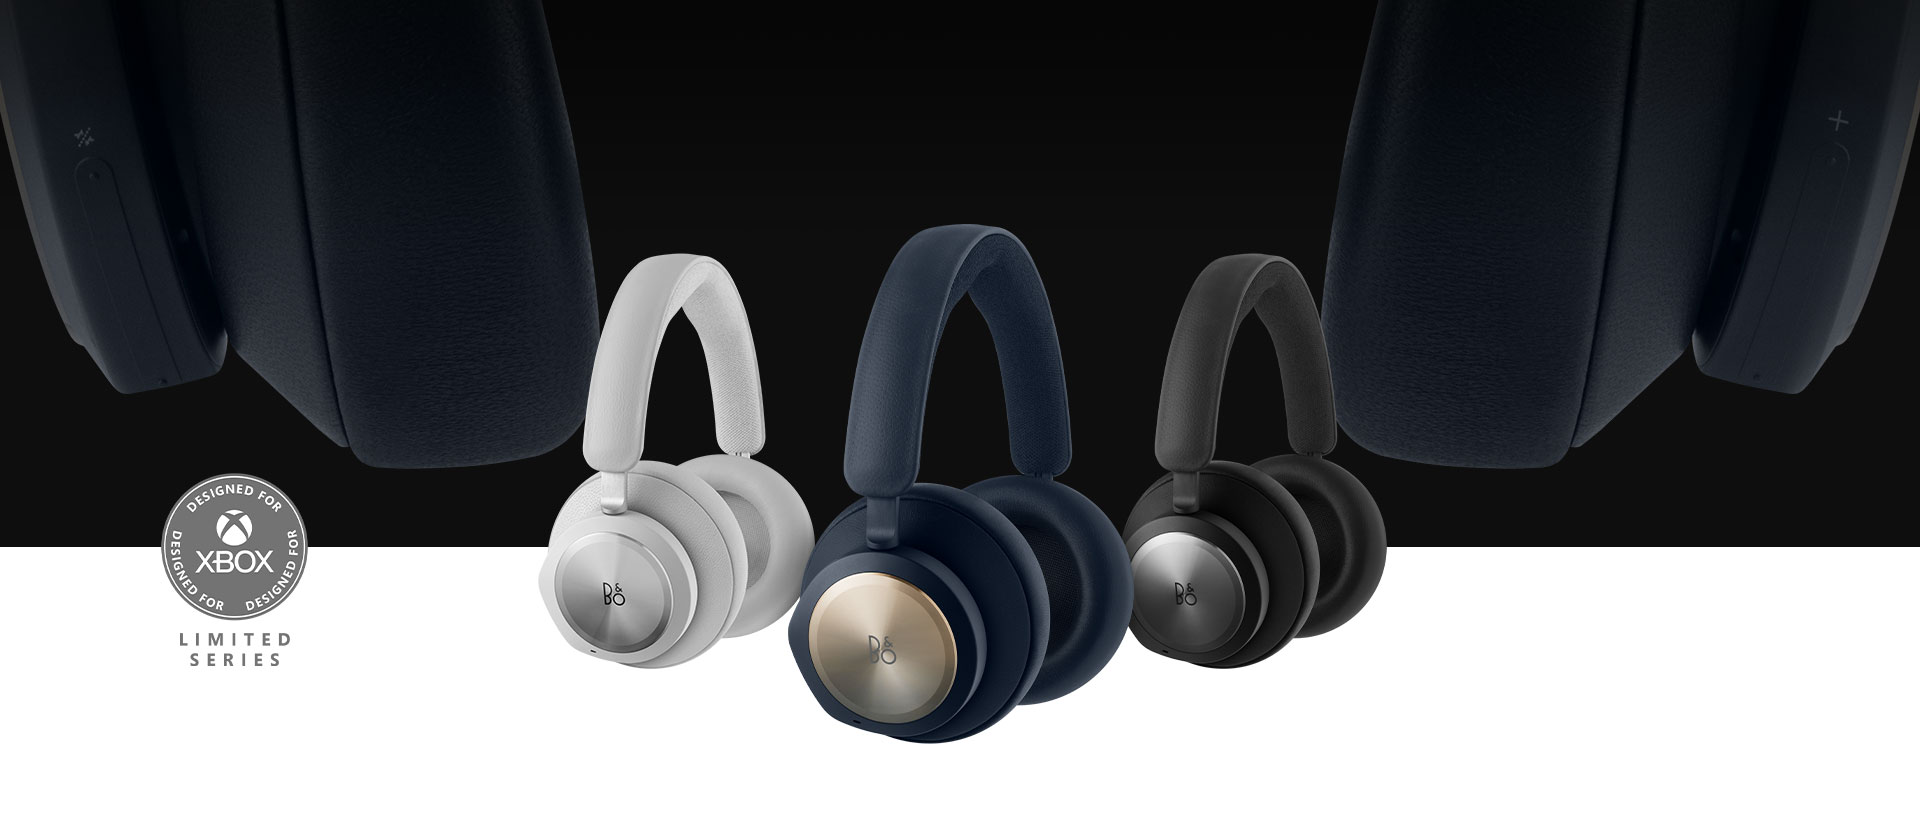 Diseñados para Xbox, cascos Bang & Olufsen azul marino al frente con los cascos negros y grises al lado